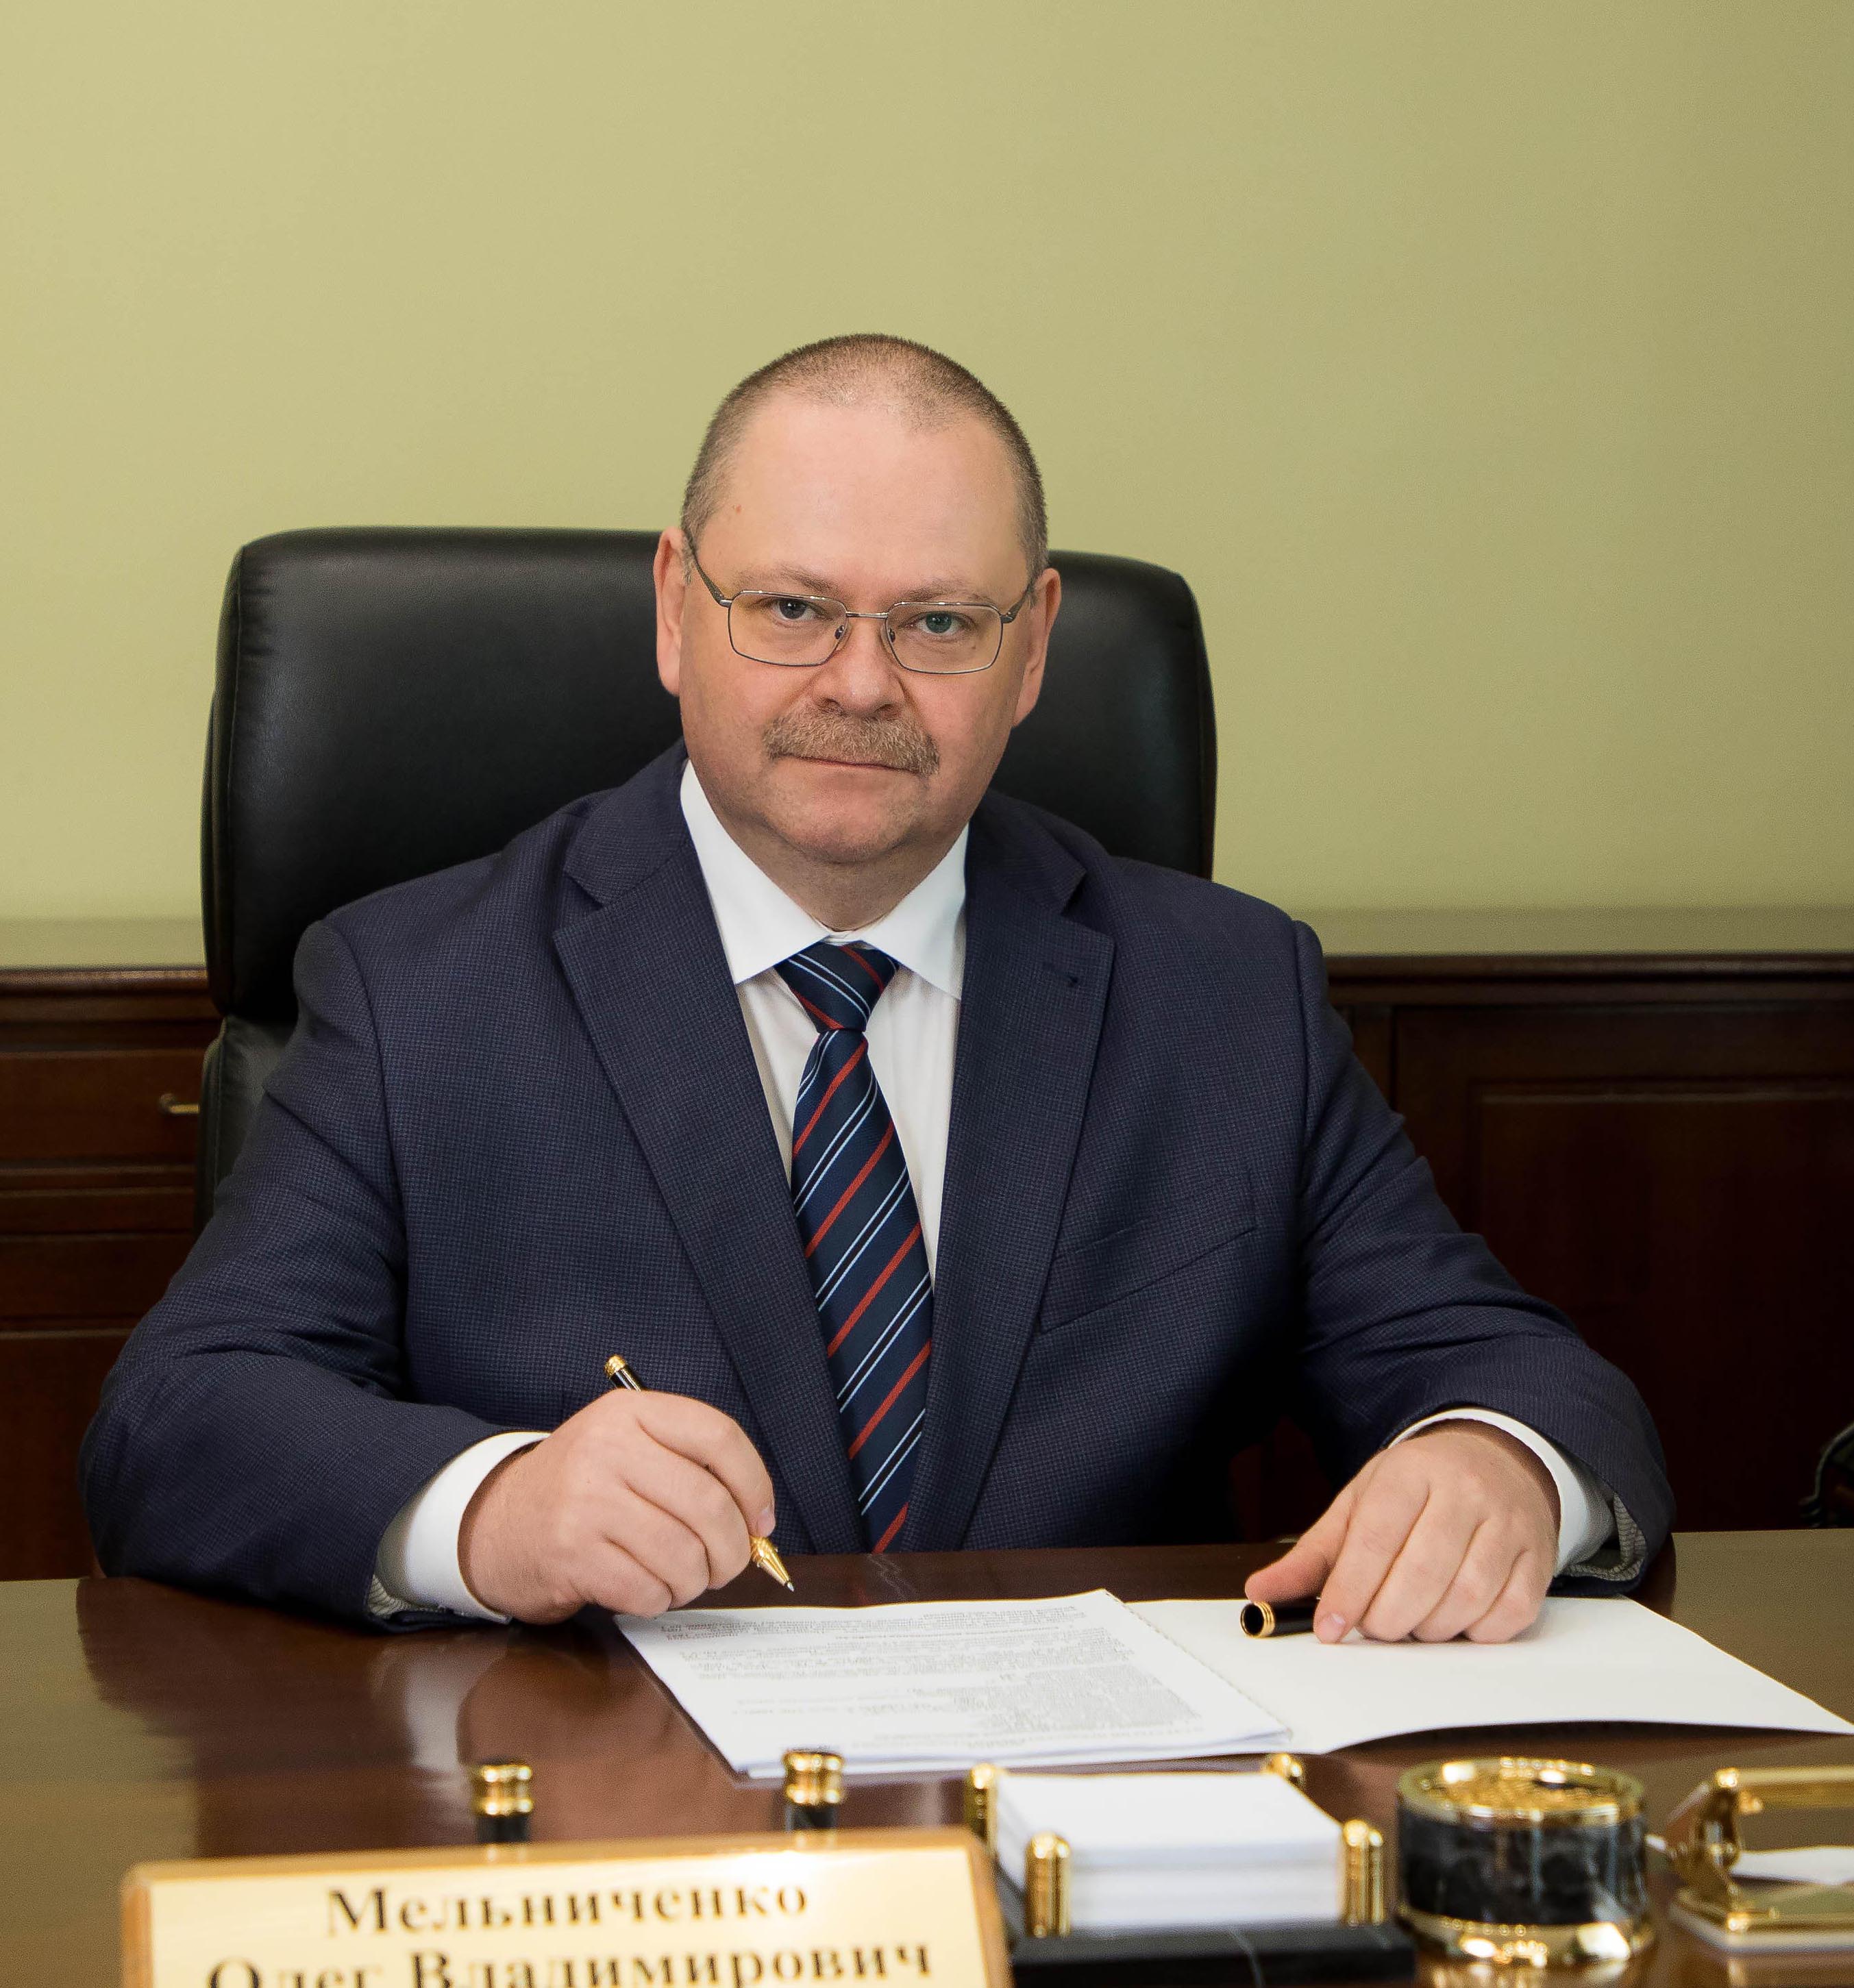 Губернатор Пензенской области Олег Мельниченко отмечает 50-летие